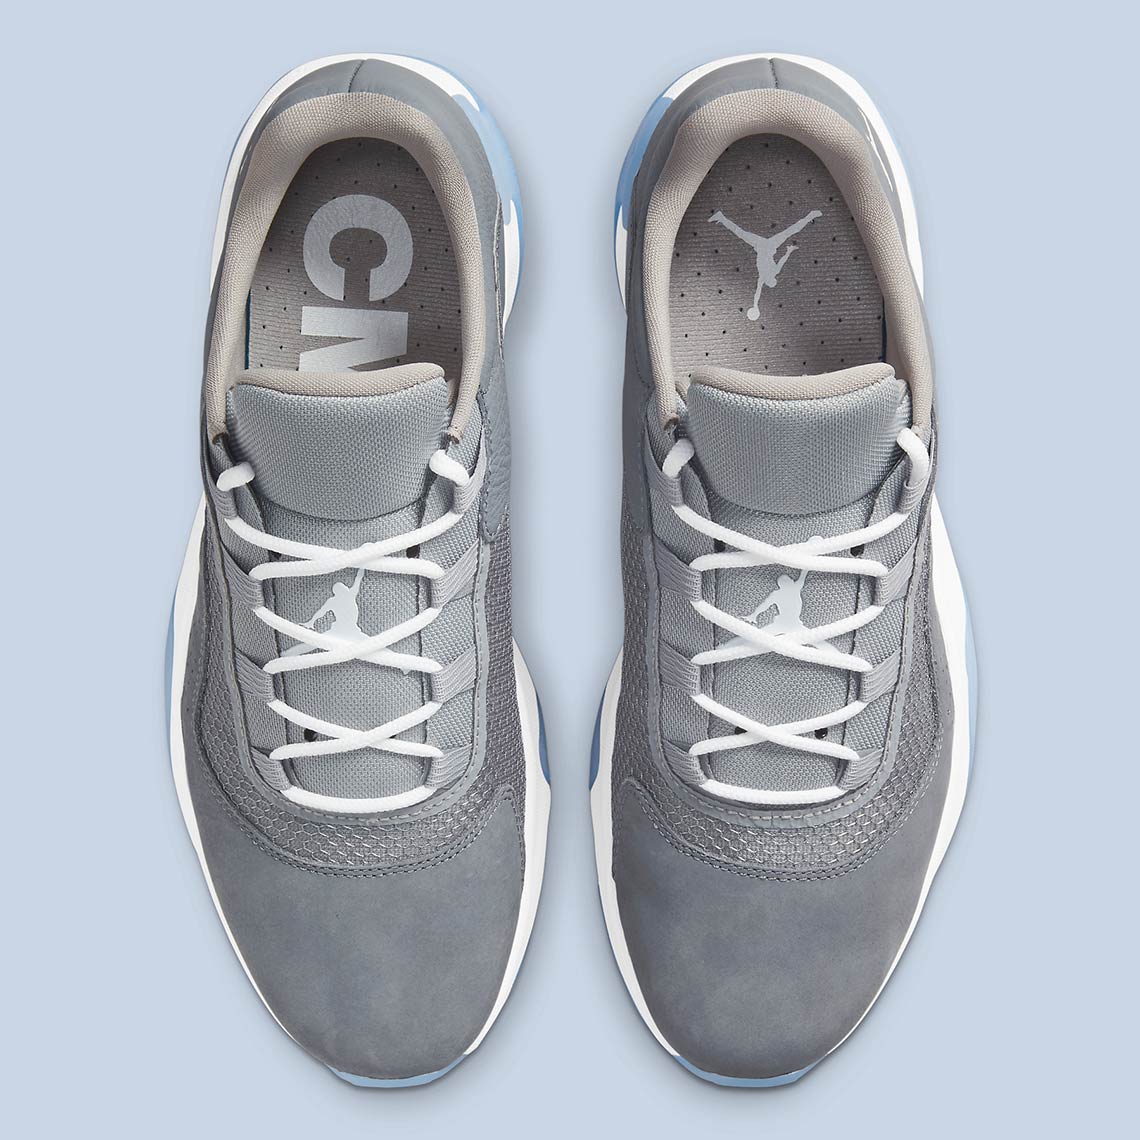 Air Jordan 11 CMFT Low Cool Grey CW0784-001 | SneakerNews.com